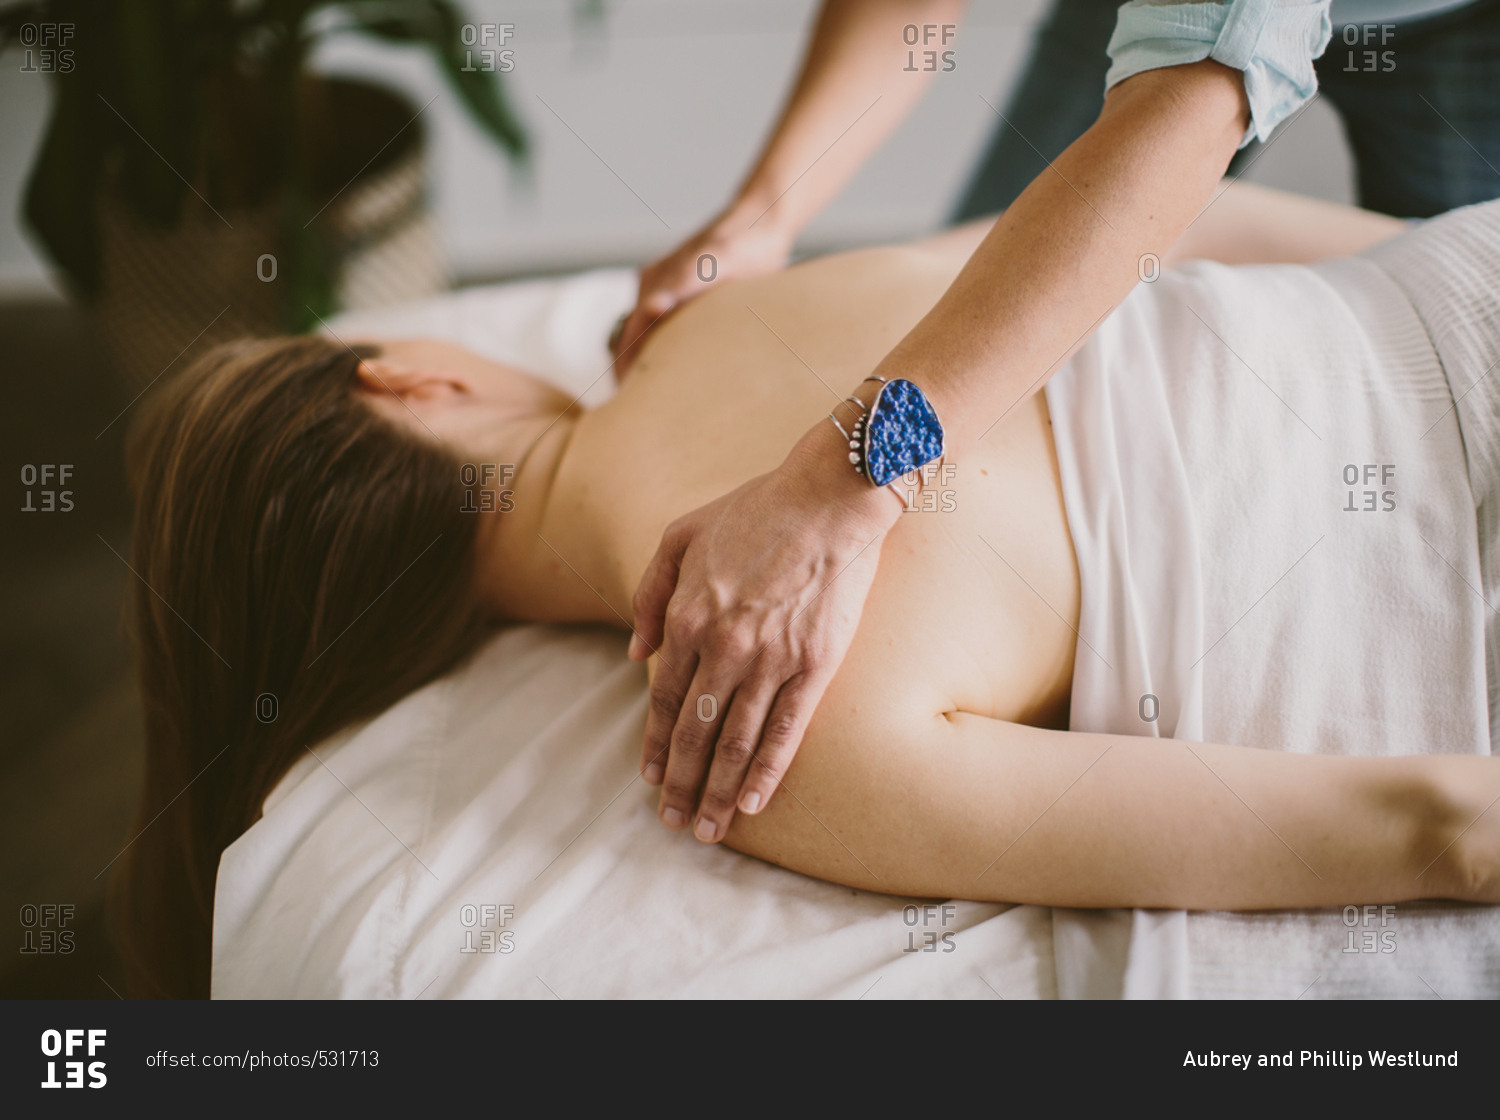 Massage therapist giving a massage